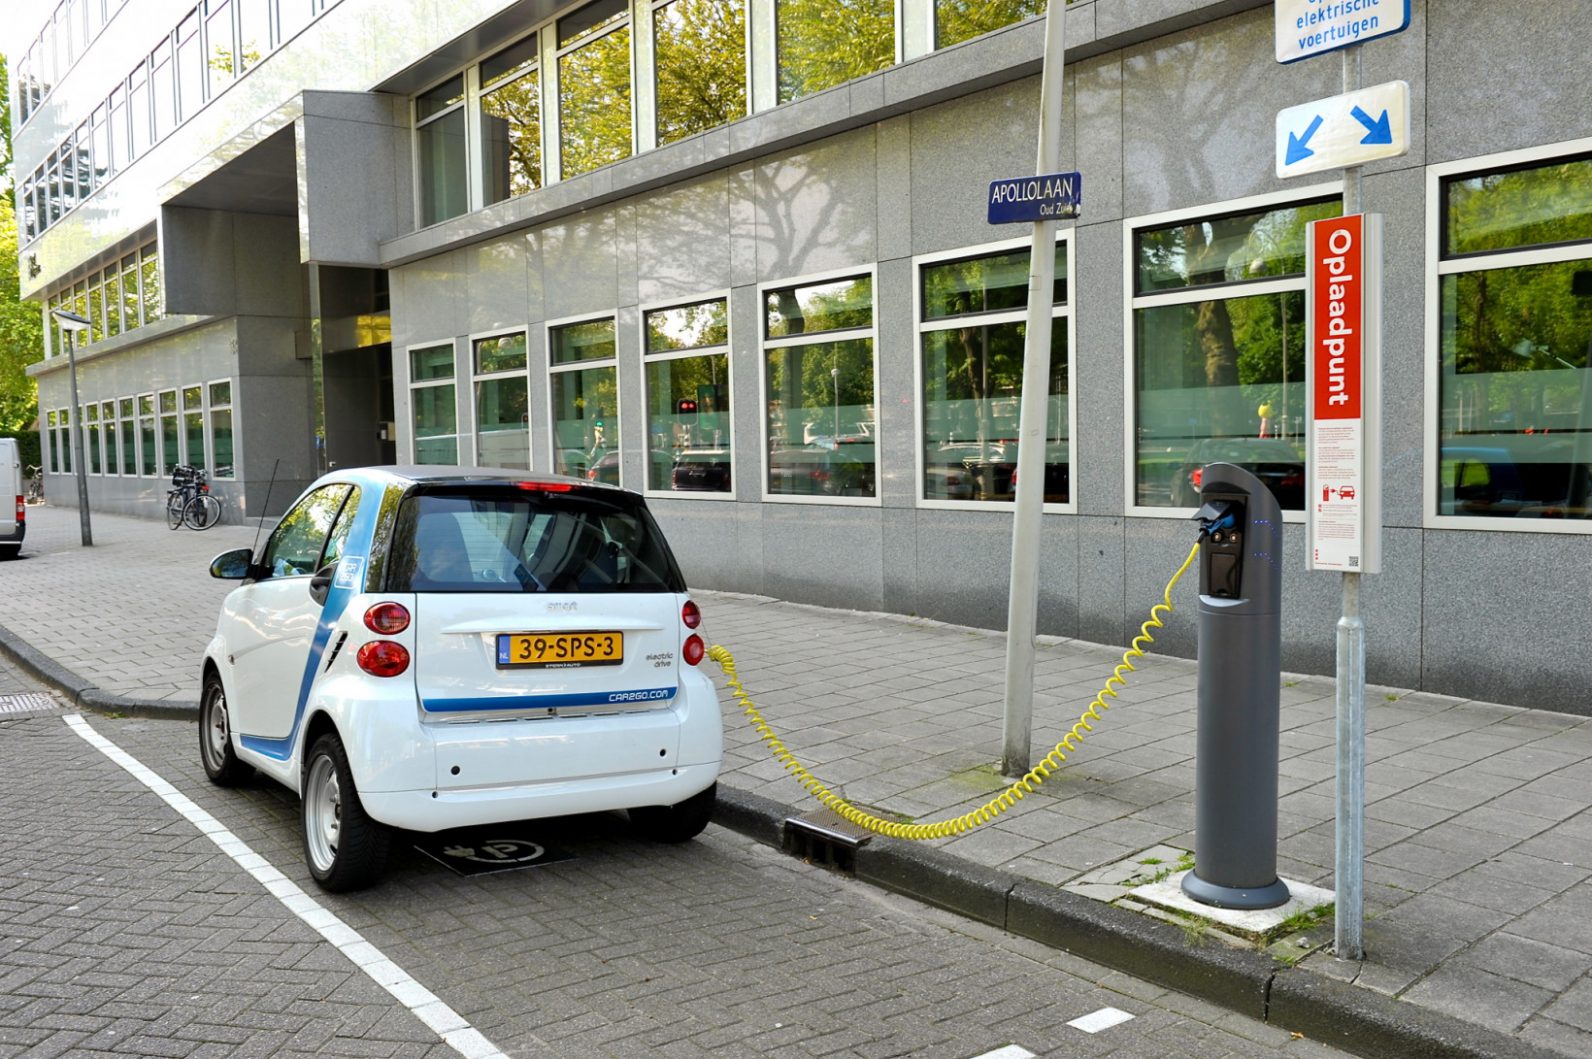 EV fans deplete Dutch gov’s €10M electric vehicle grant in just 8 days